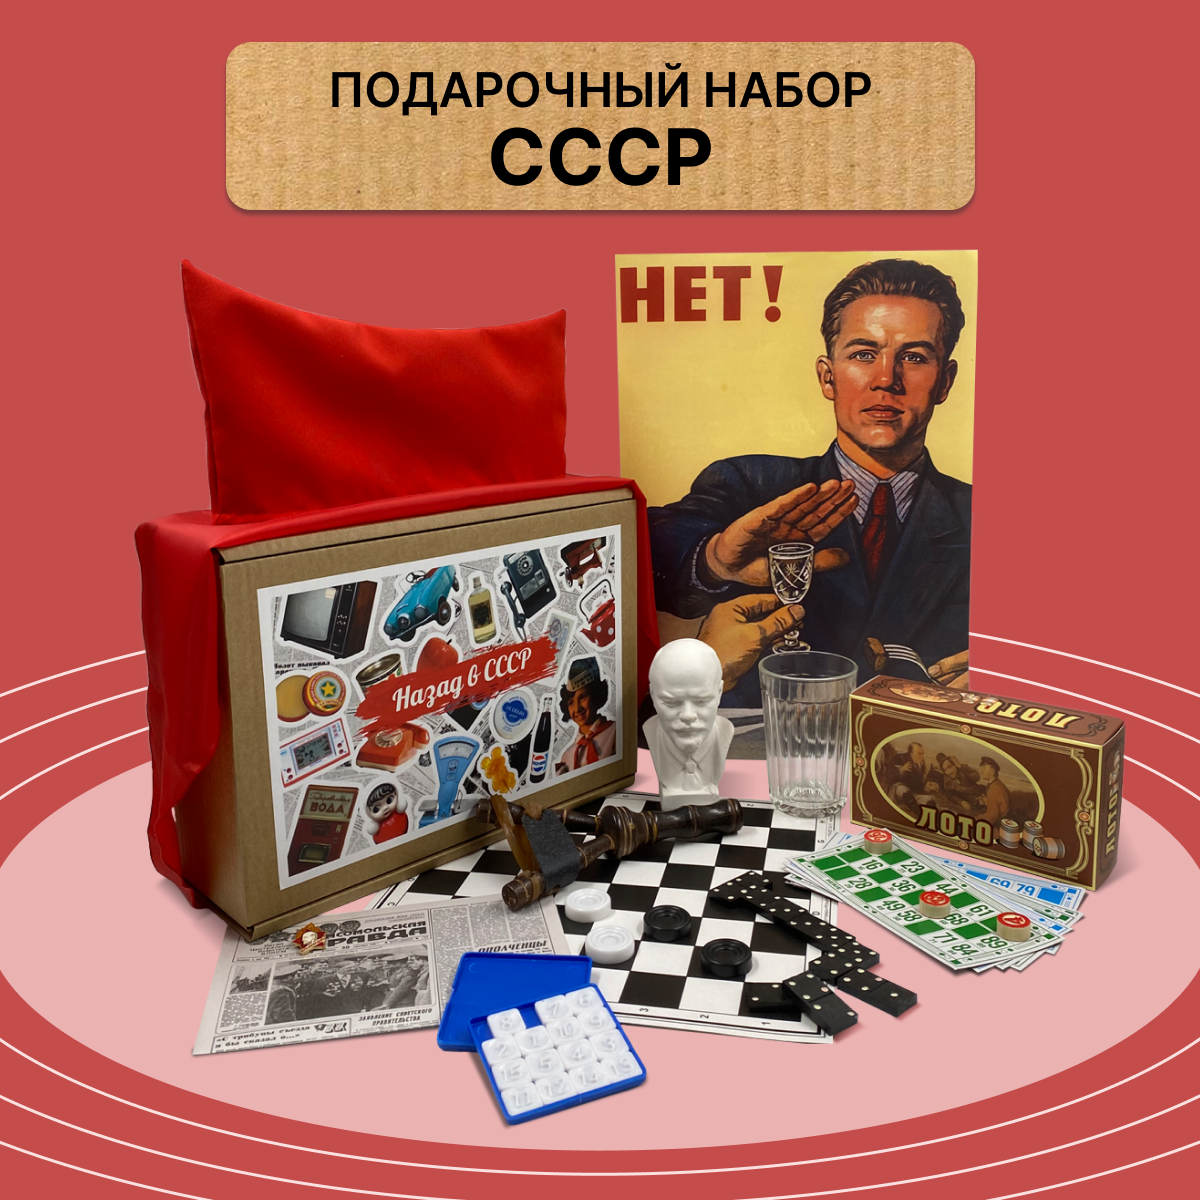 Подарочный набор Black Box "СССР"/ Подарок мужчине в коробке/ Вещи из СССР: набор пионера, значок, пятнашки, домино/ Мужской бокс